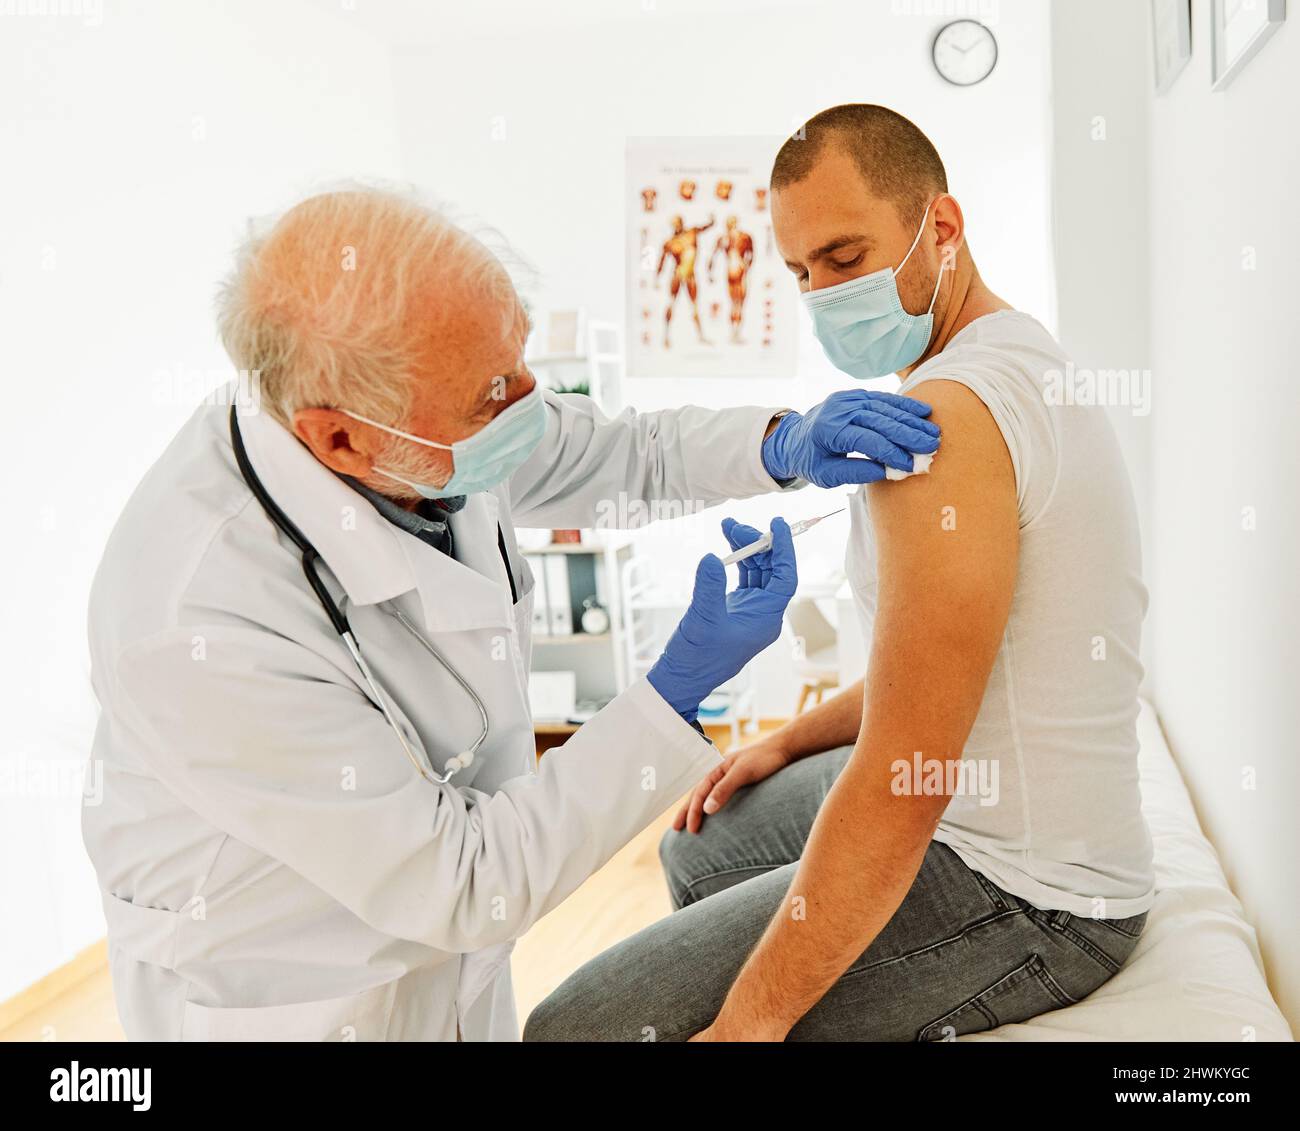 vaccinazione medicinale siringa vaccino medico iniezione medico salute virus ospedale cura del paziente influenza maschera coronavirus corona uomo anziano Foto Stock